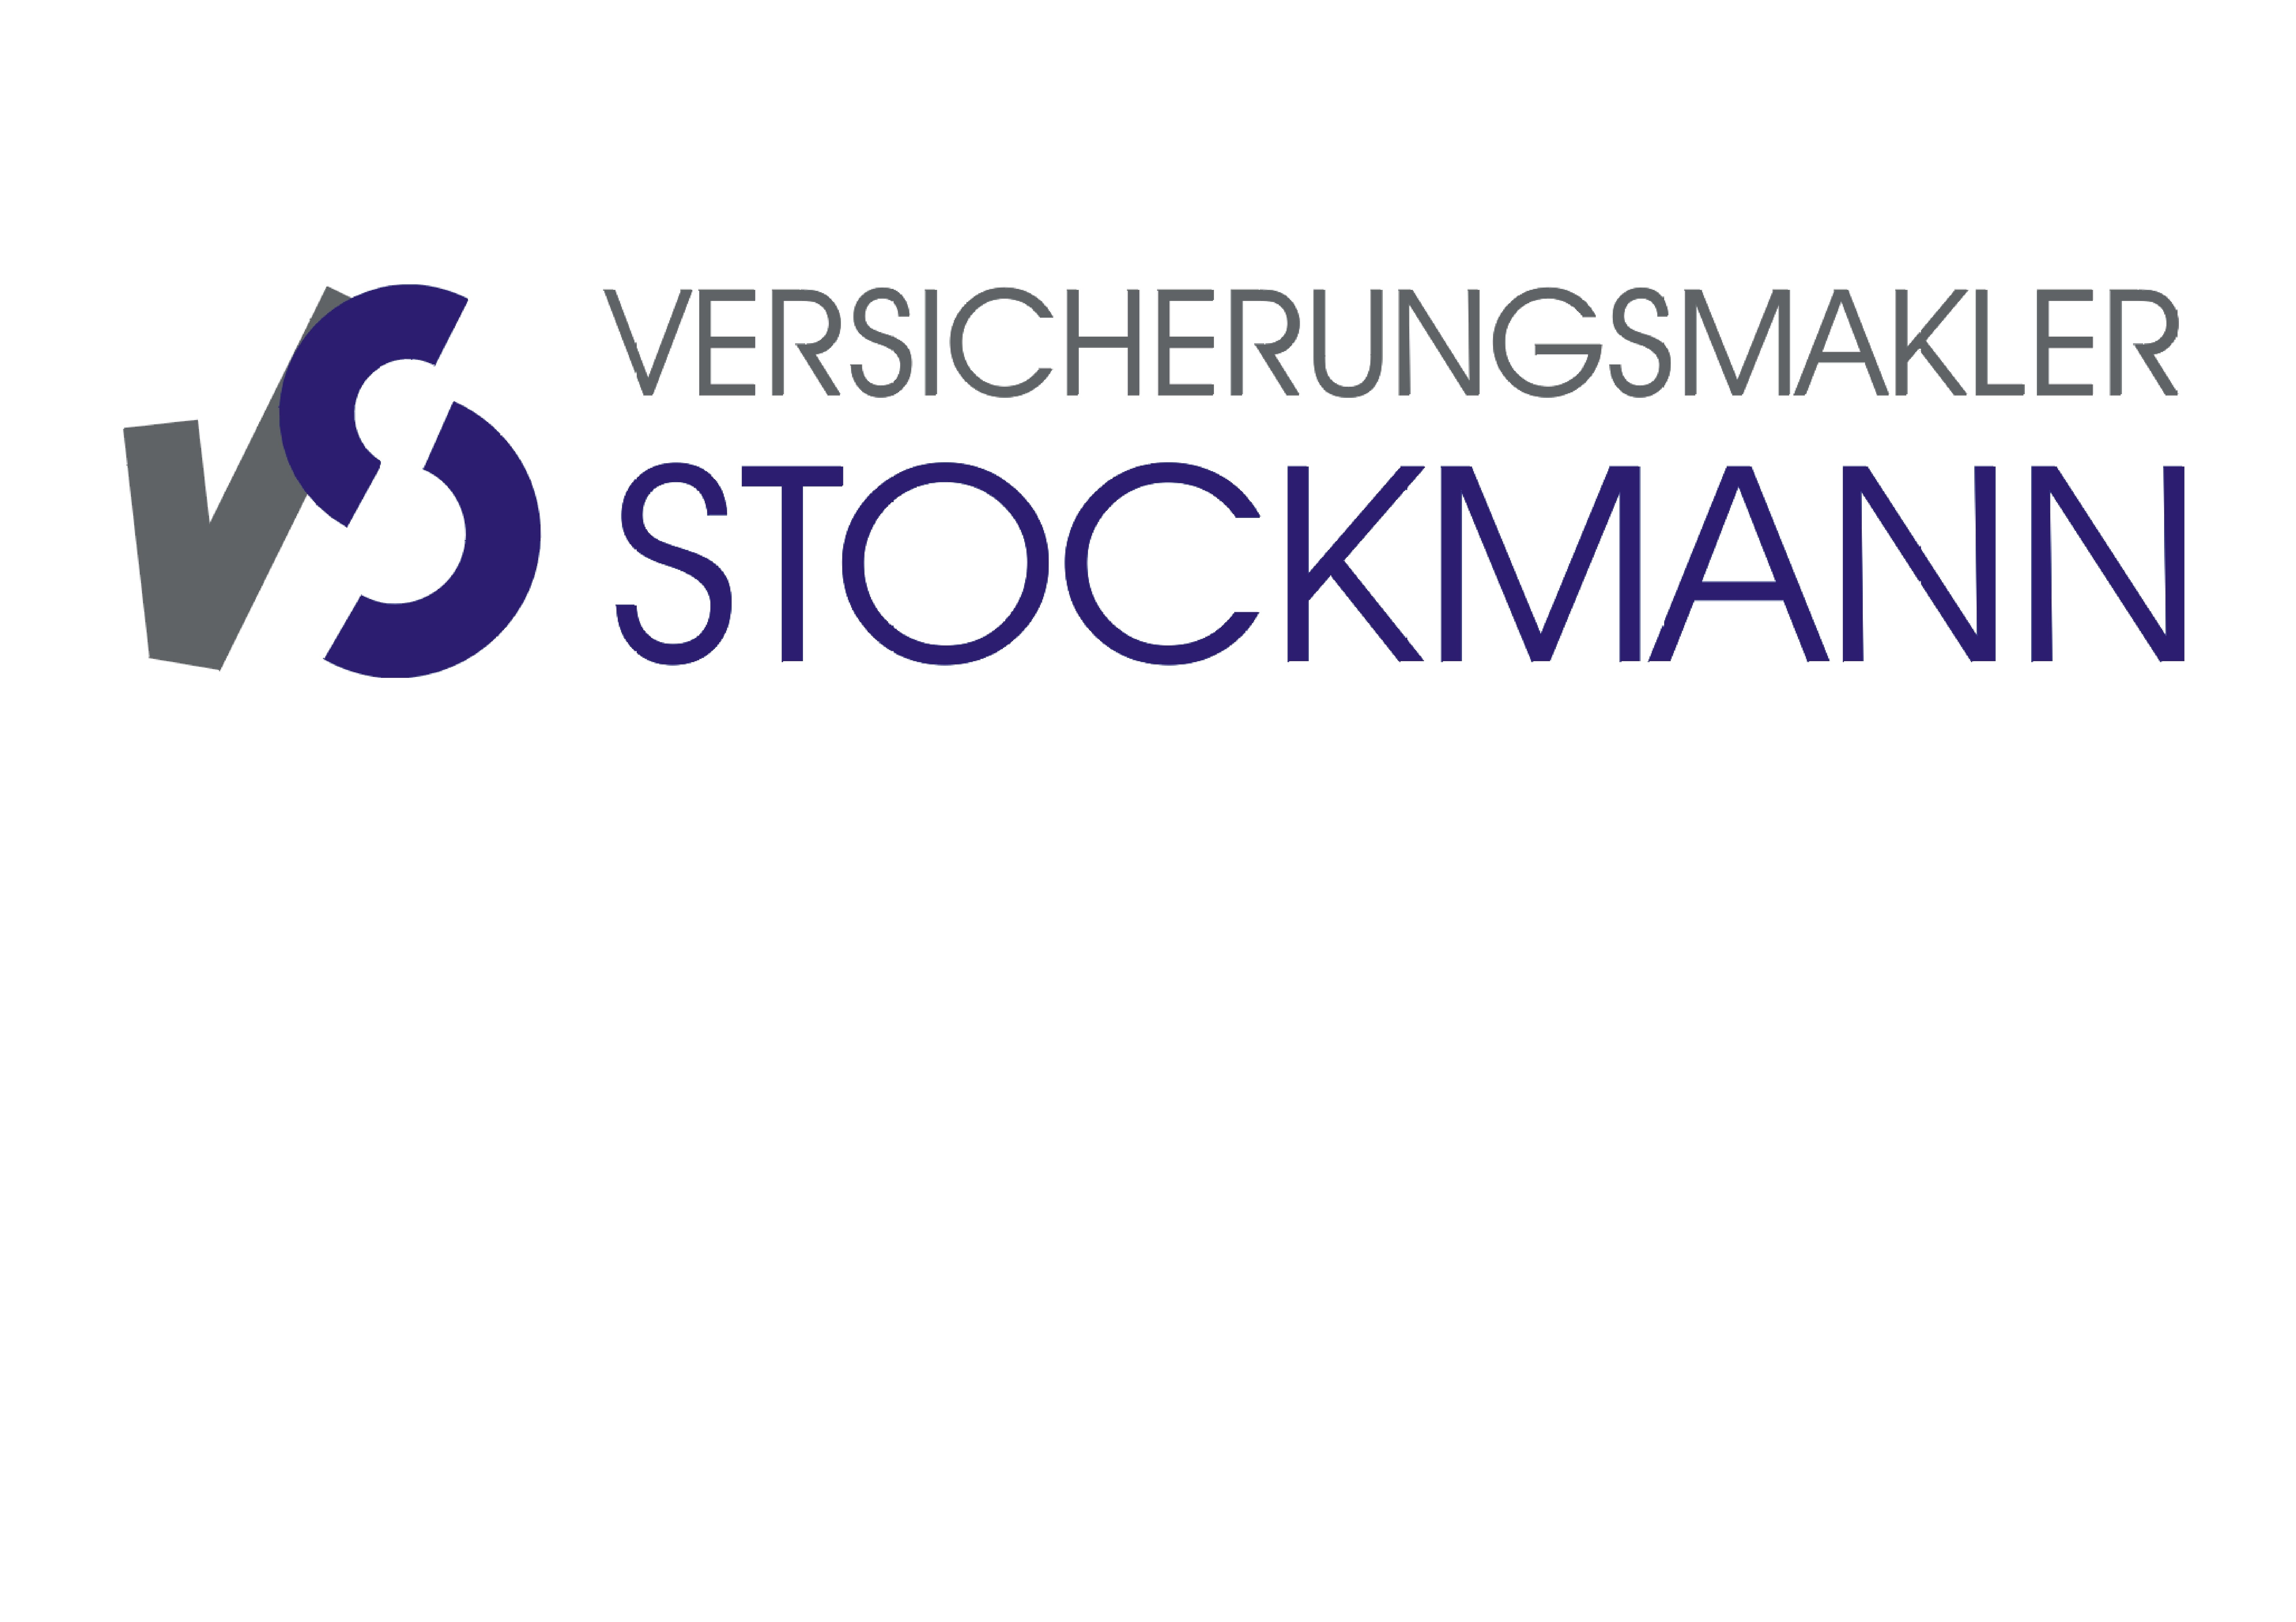  Versicherungsmakler Stockmann